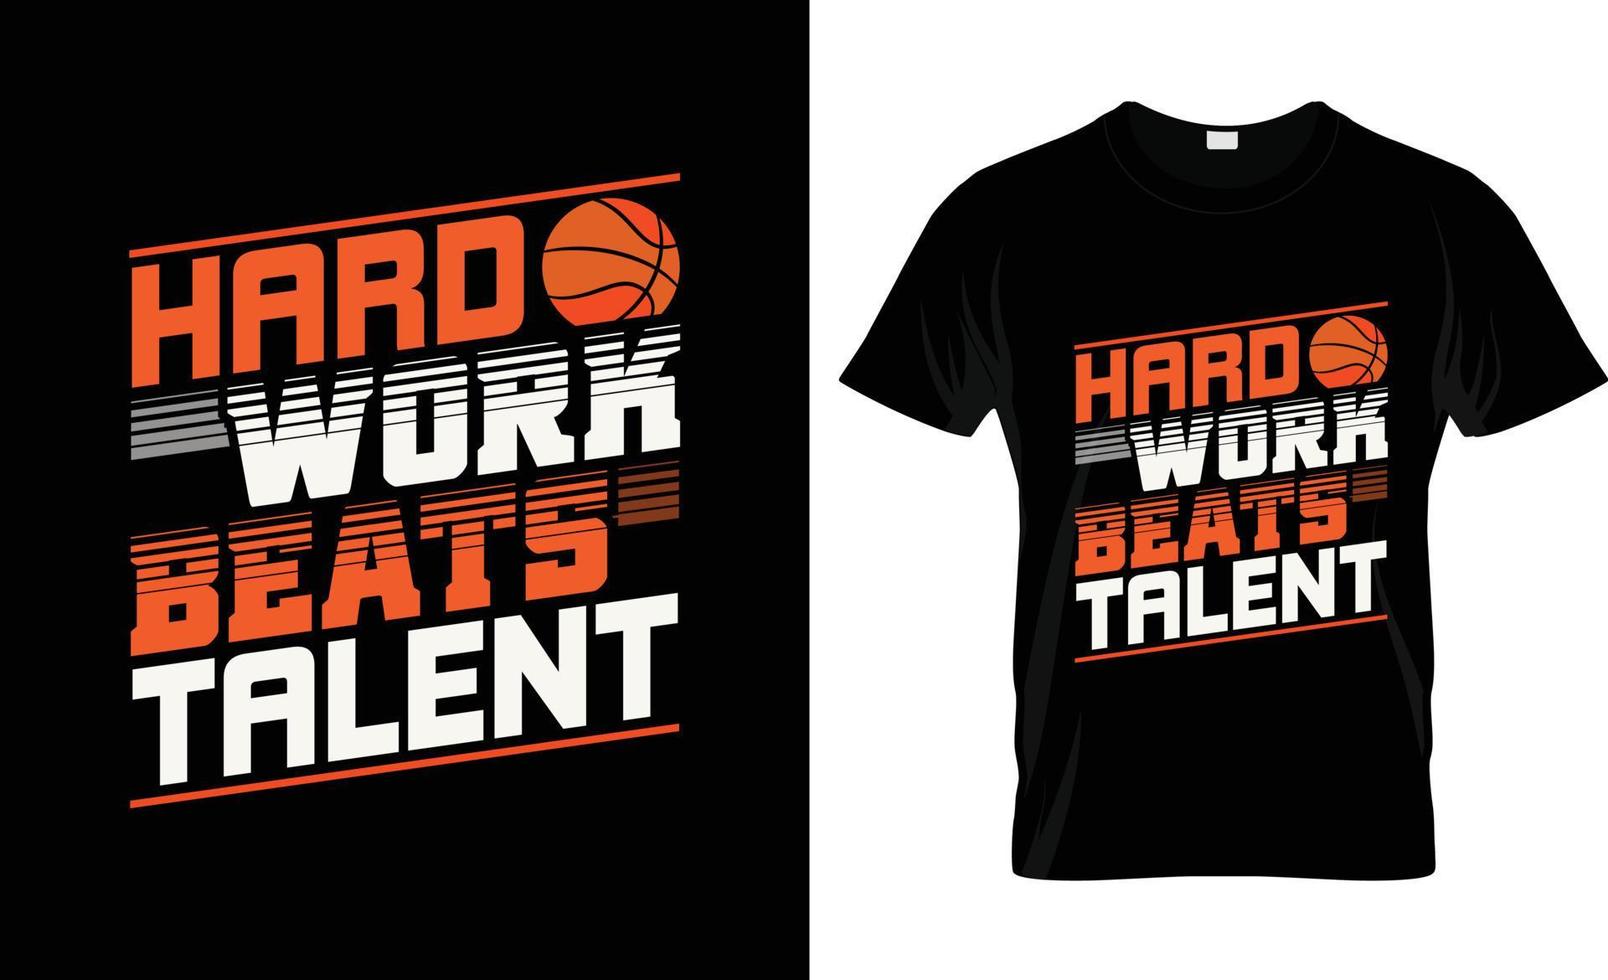 le travail acharné bat la conception de t-shirt de basket-ball trlent, le slogan de t-shirt de basket-ball et la conception de vêtements, la typographie de basket-ball, le vecteur de basket-ball, l'illustration de basket-ball